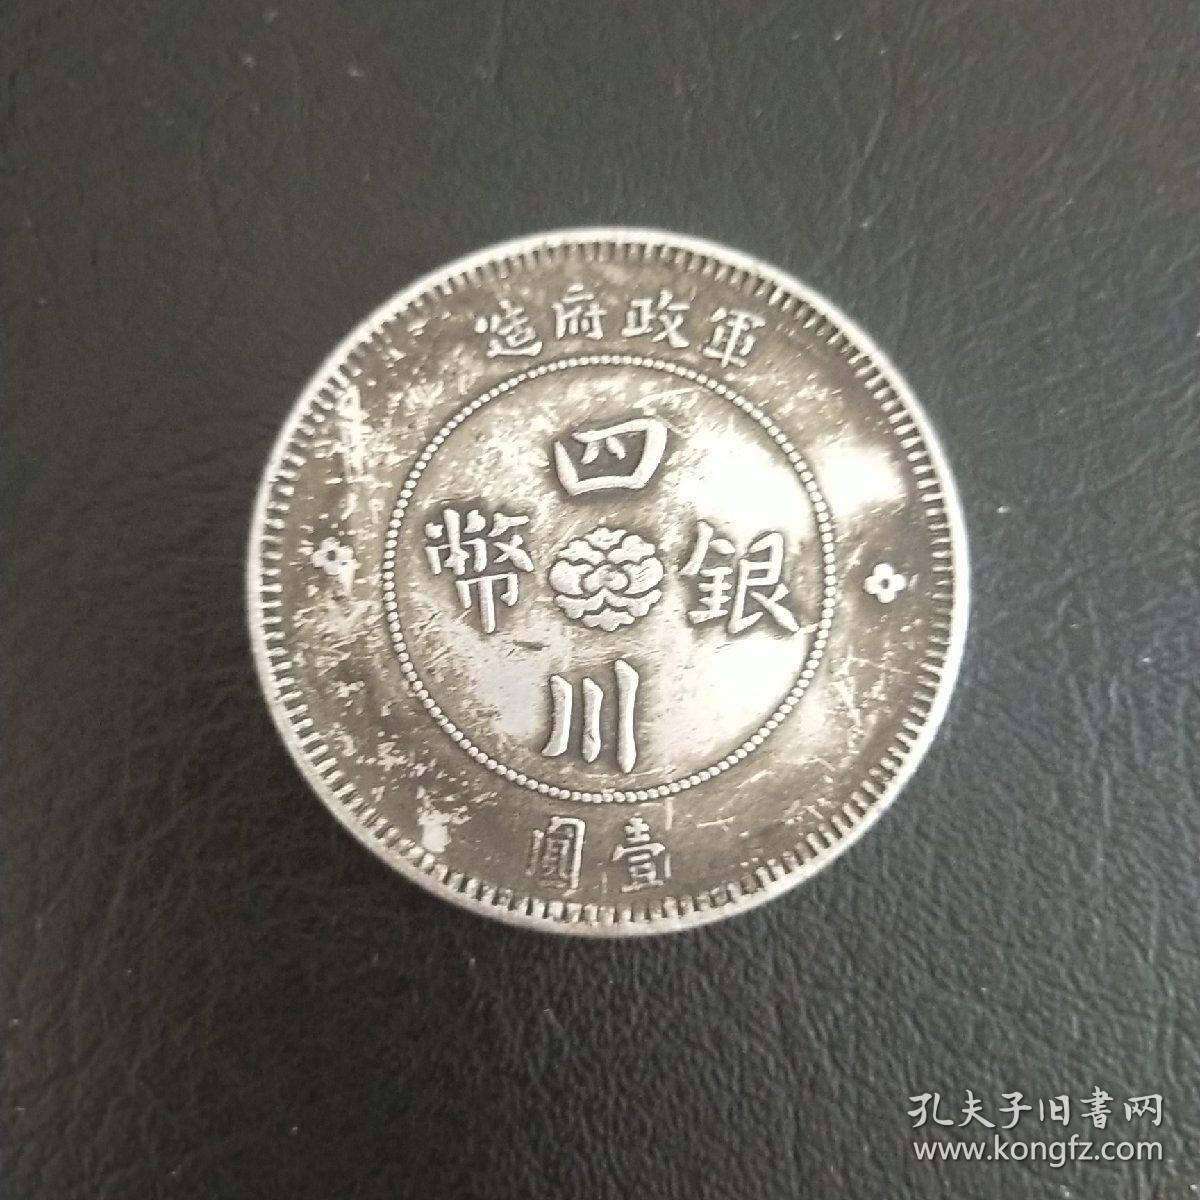 四川银币  中华民国元年  银元  纪念币  古币  老钱币